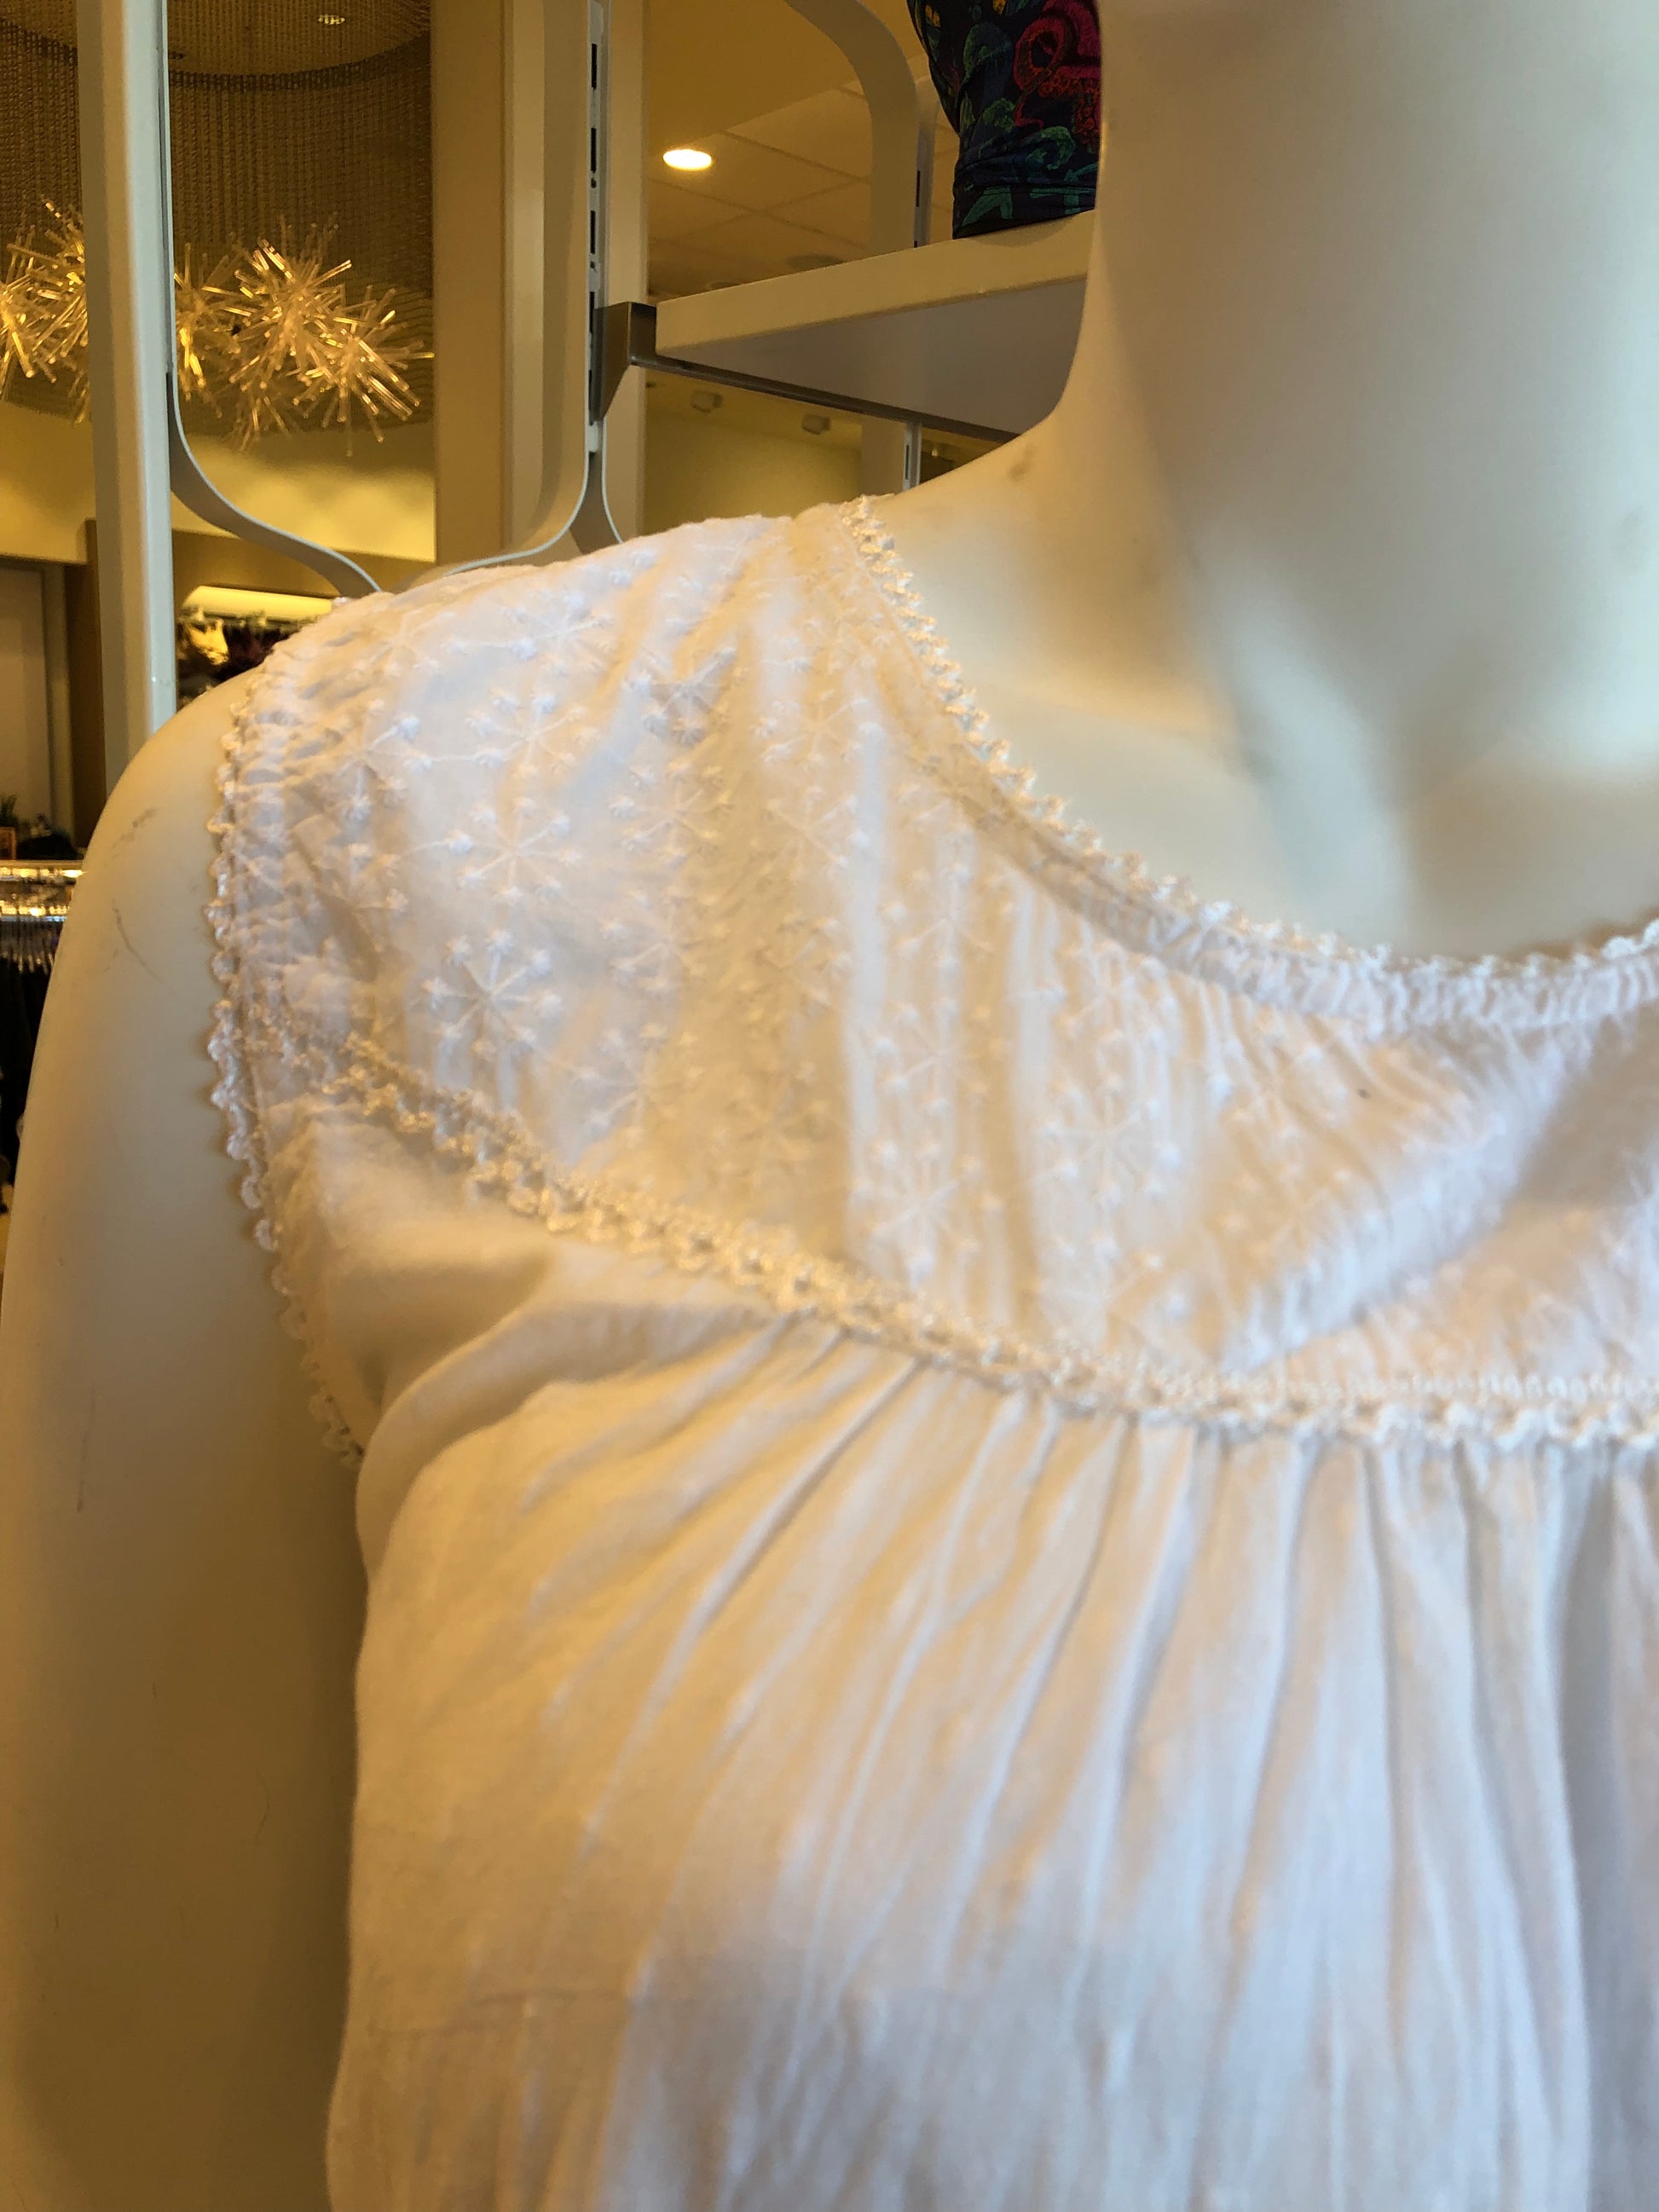 100% Cotton Sleeveless 46 Nightgown PJ4483 - White